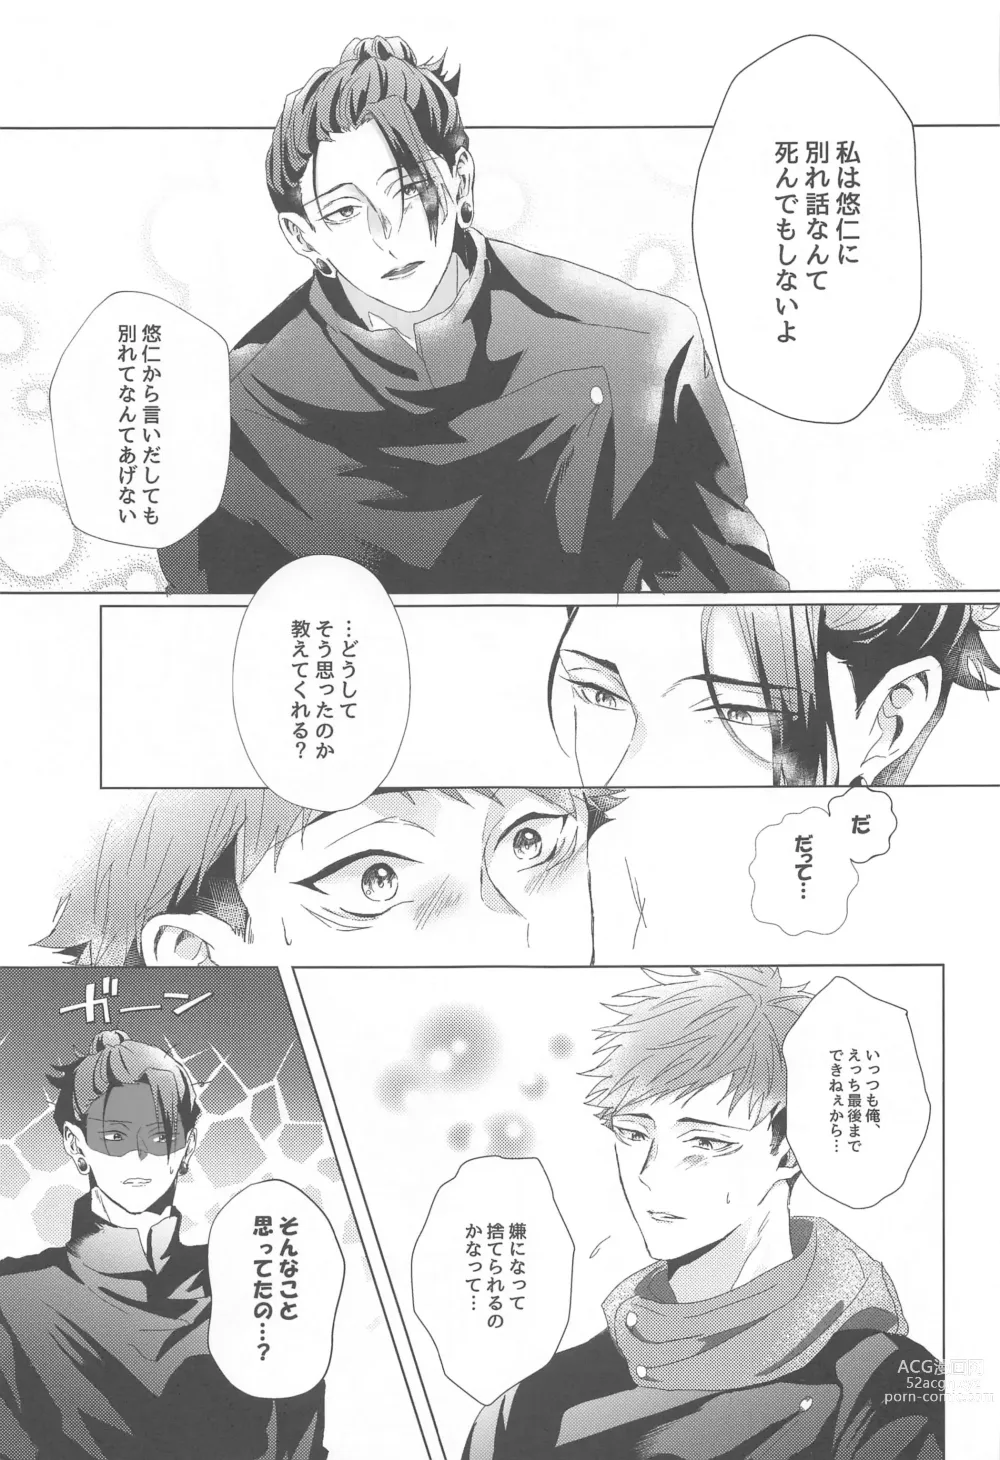 Page 30 of doujinshi Senpai, Anone.